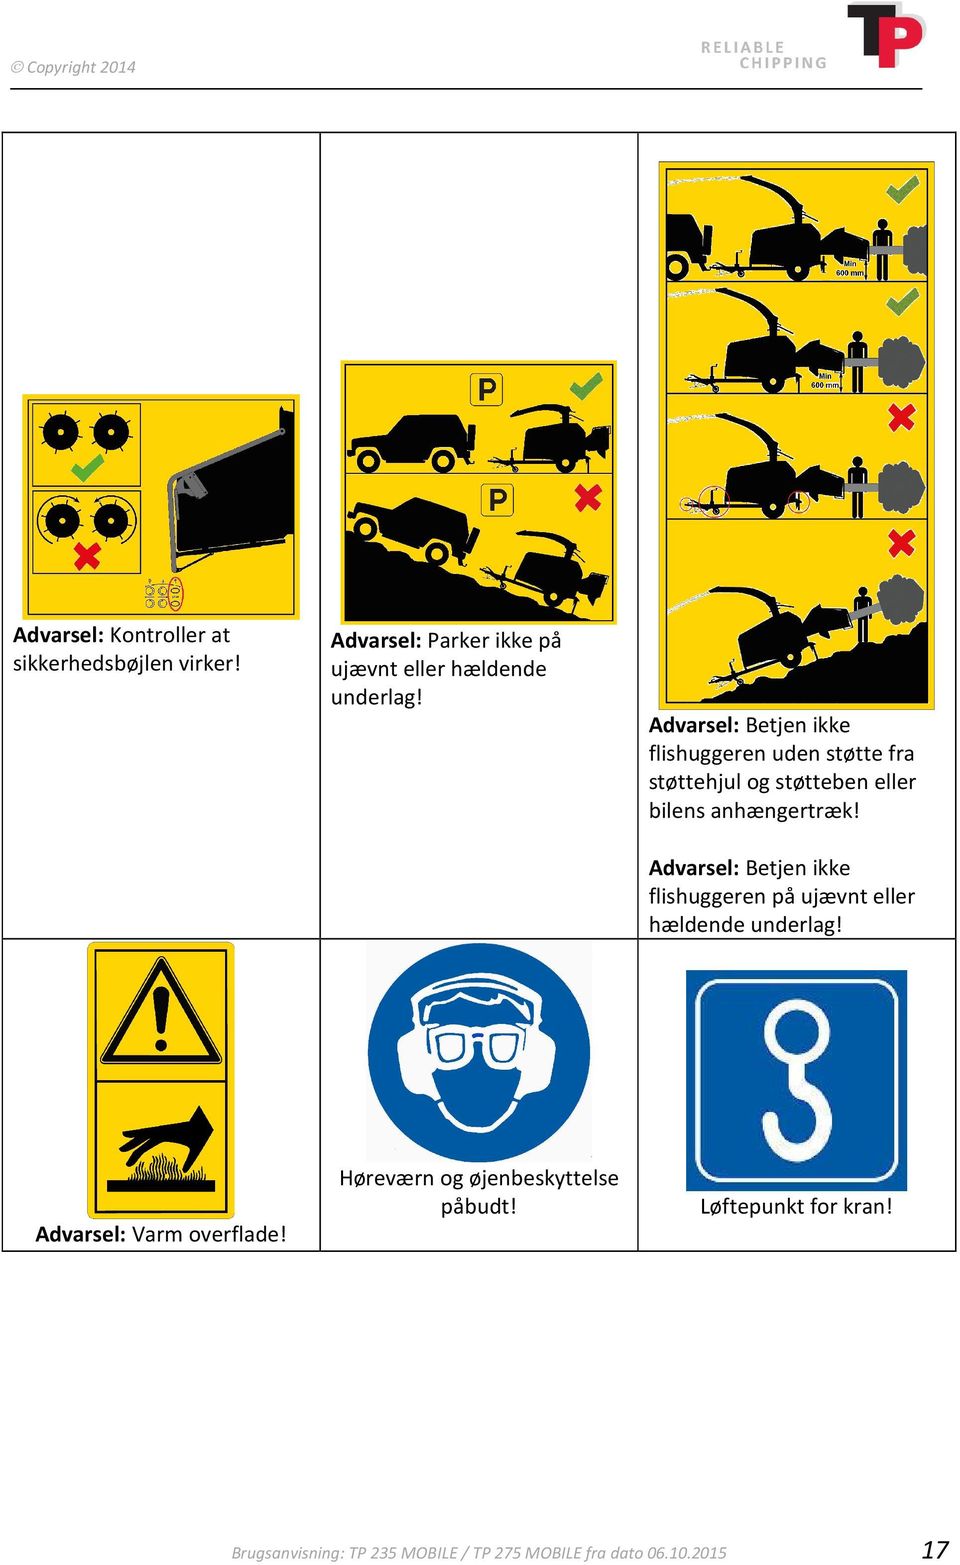 Advarsel: Betjen ikke flishuggeren uden støtte fra støttehjul og støtteben eller bilens anhængertræk!